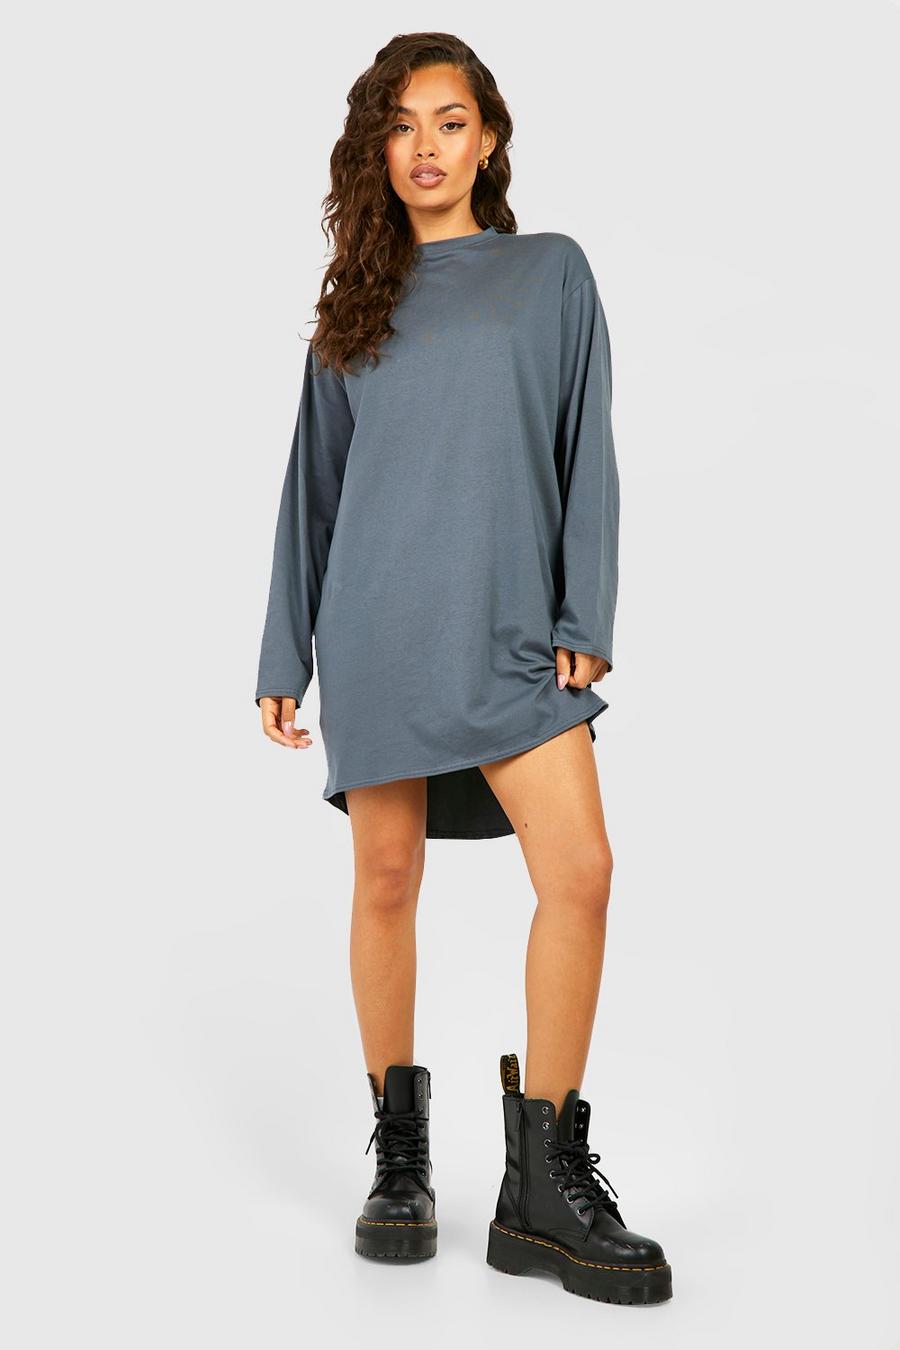 Charcoal Oversize långärmad t-shirtklänning med ojämn kant